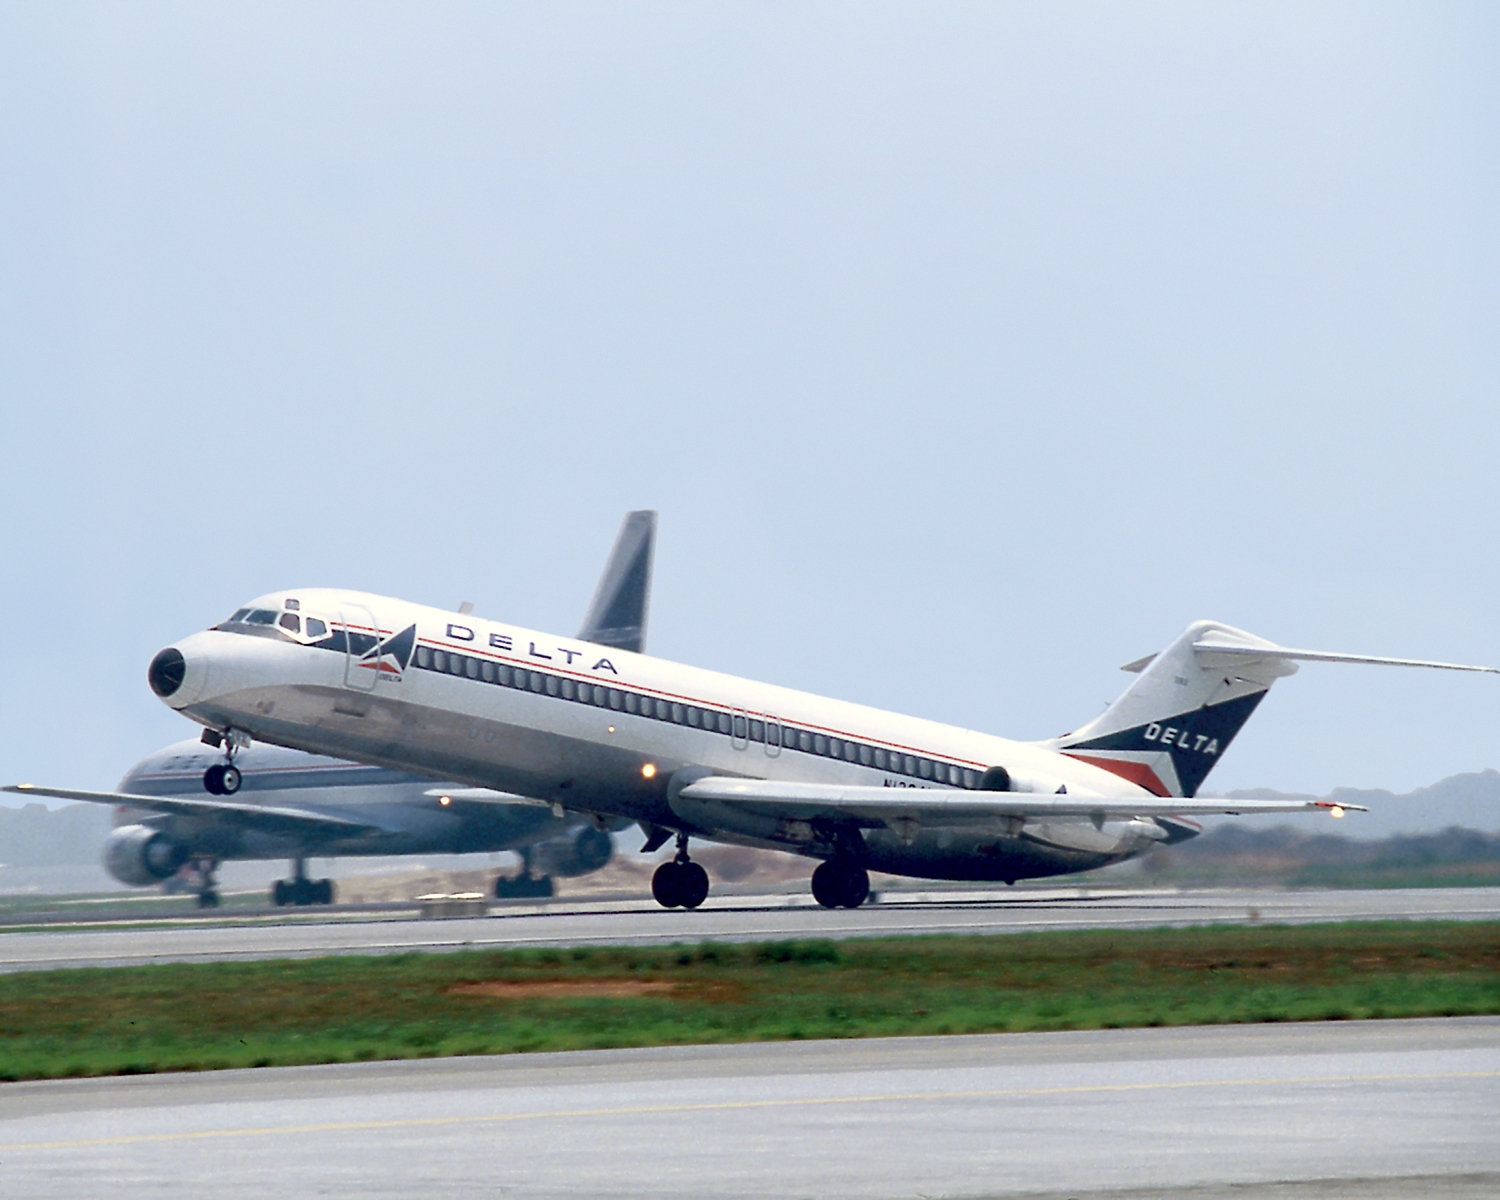 McDonnell Douglas DC-9-40/50 next